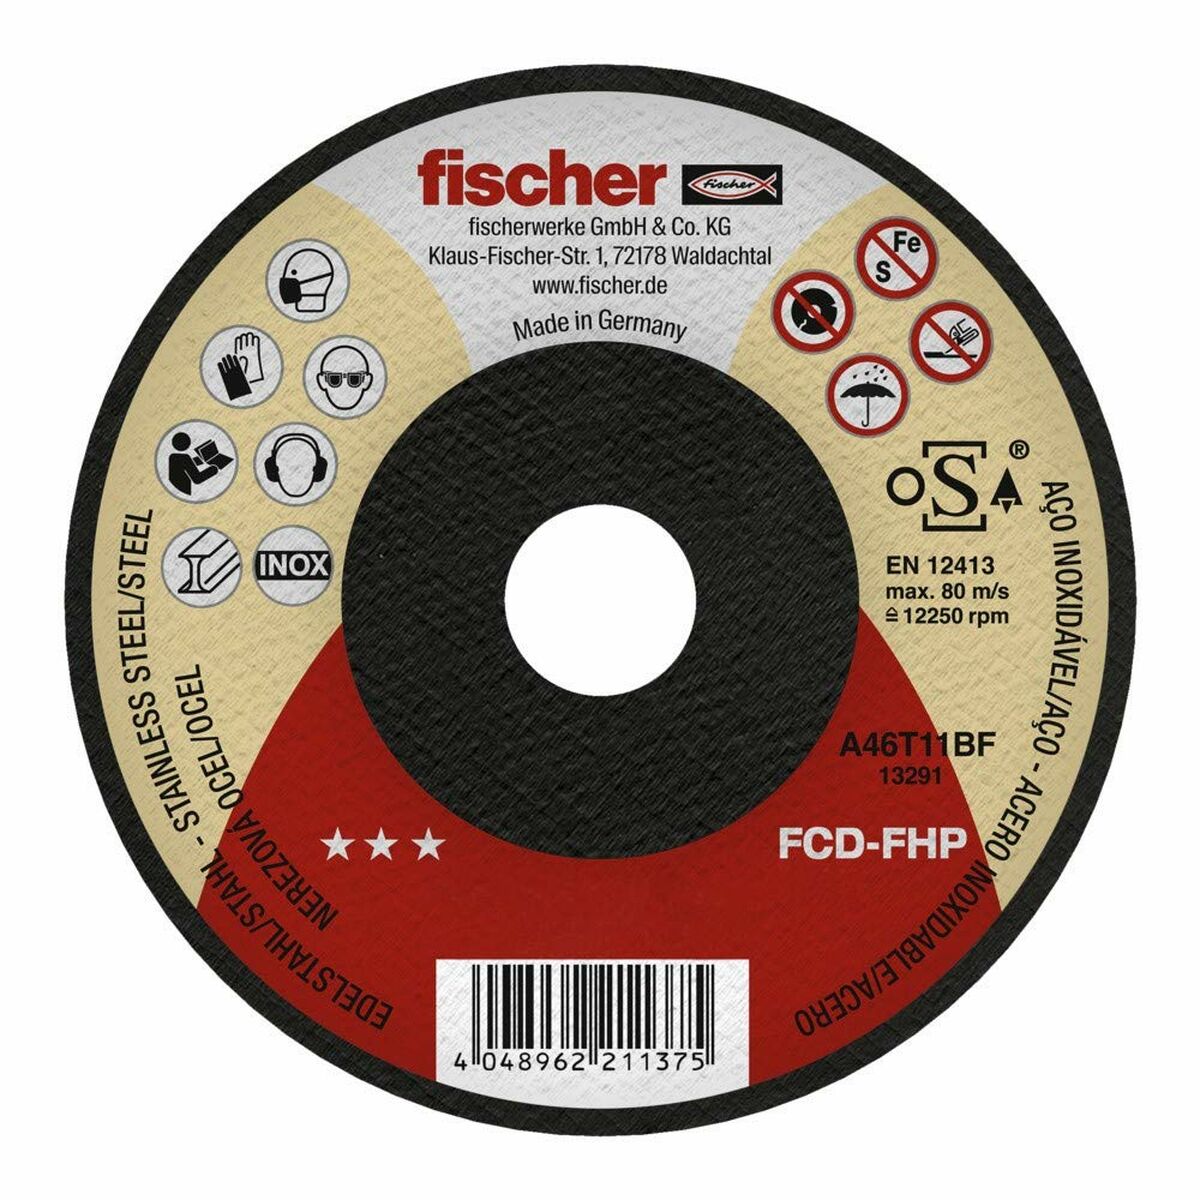 Disque de coupe Fischer fcd-fhp 531688